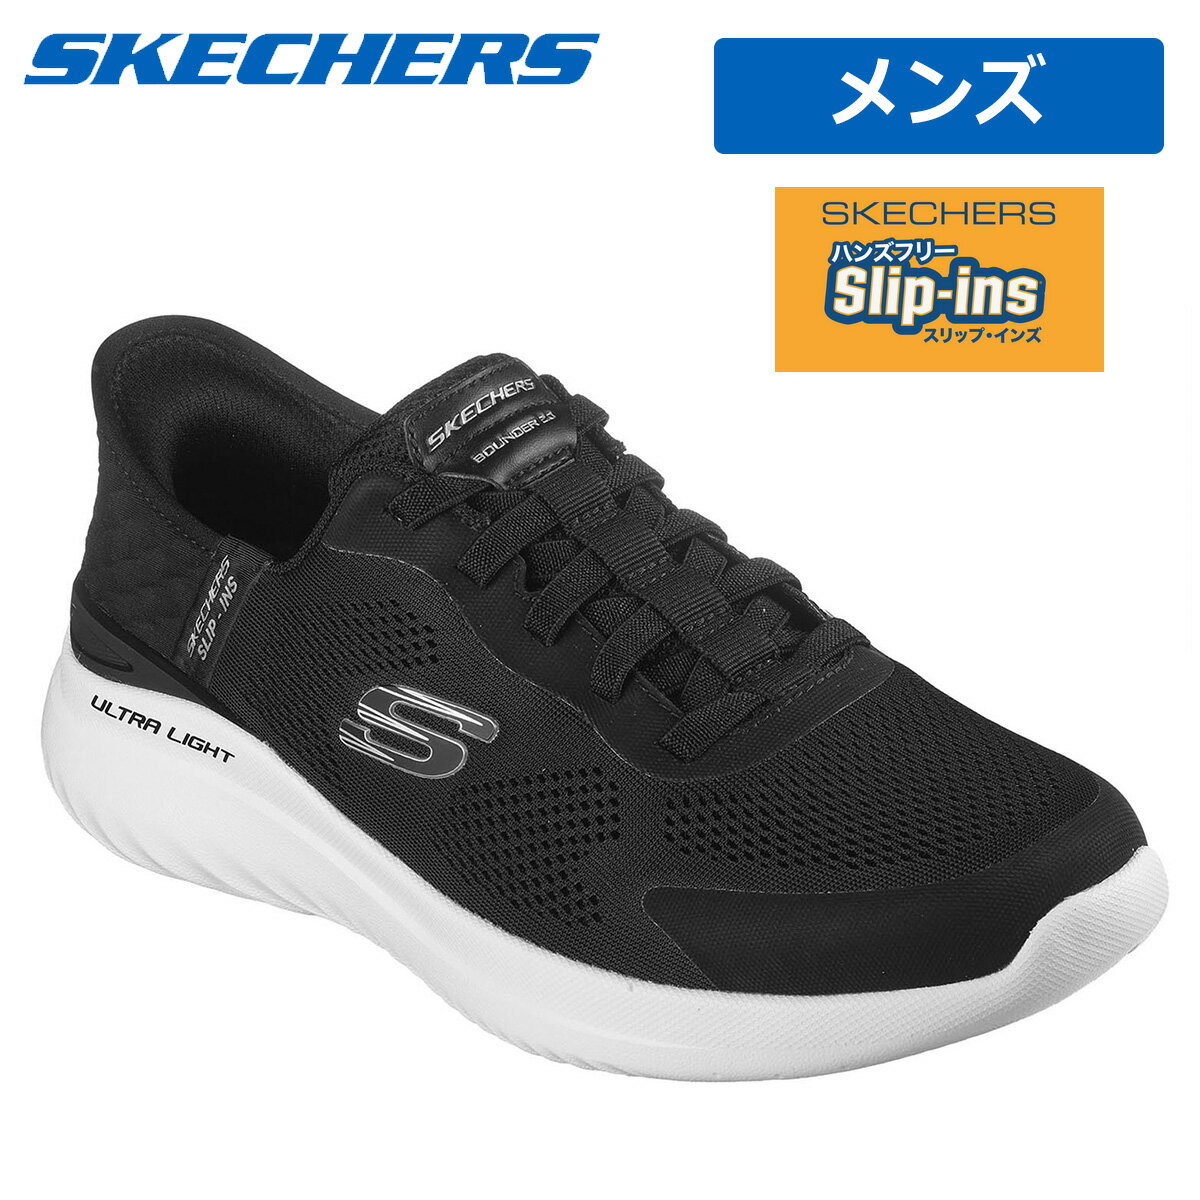 SKECHERS スケッチャーズ日本正規品 スリップ・インズ メンズ ウォーキング シューズ BOUNDER 2.0 EMERGED (バウンダー 2.0 エマージド)「 232459 」 